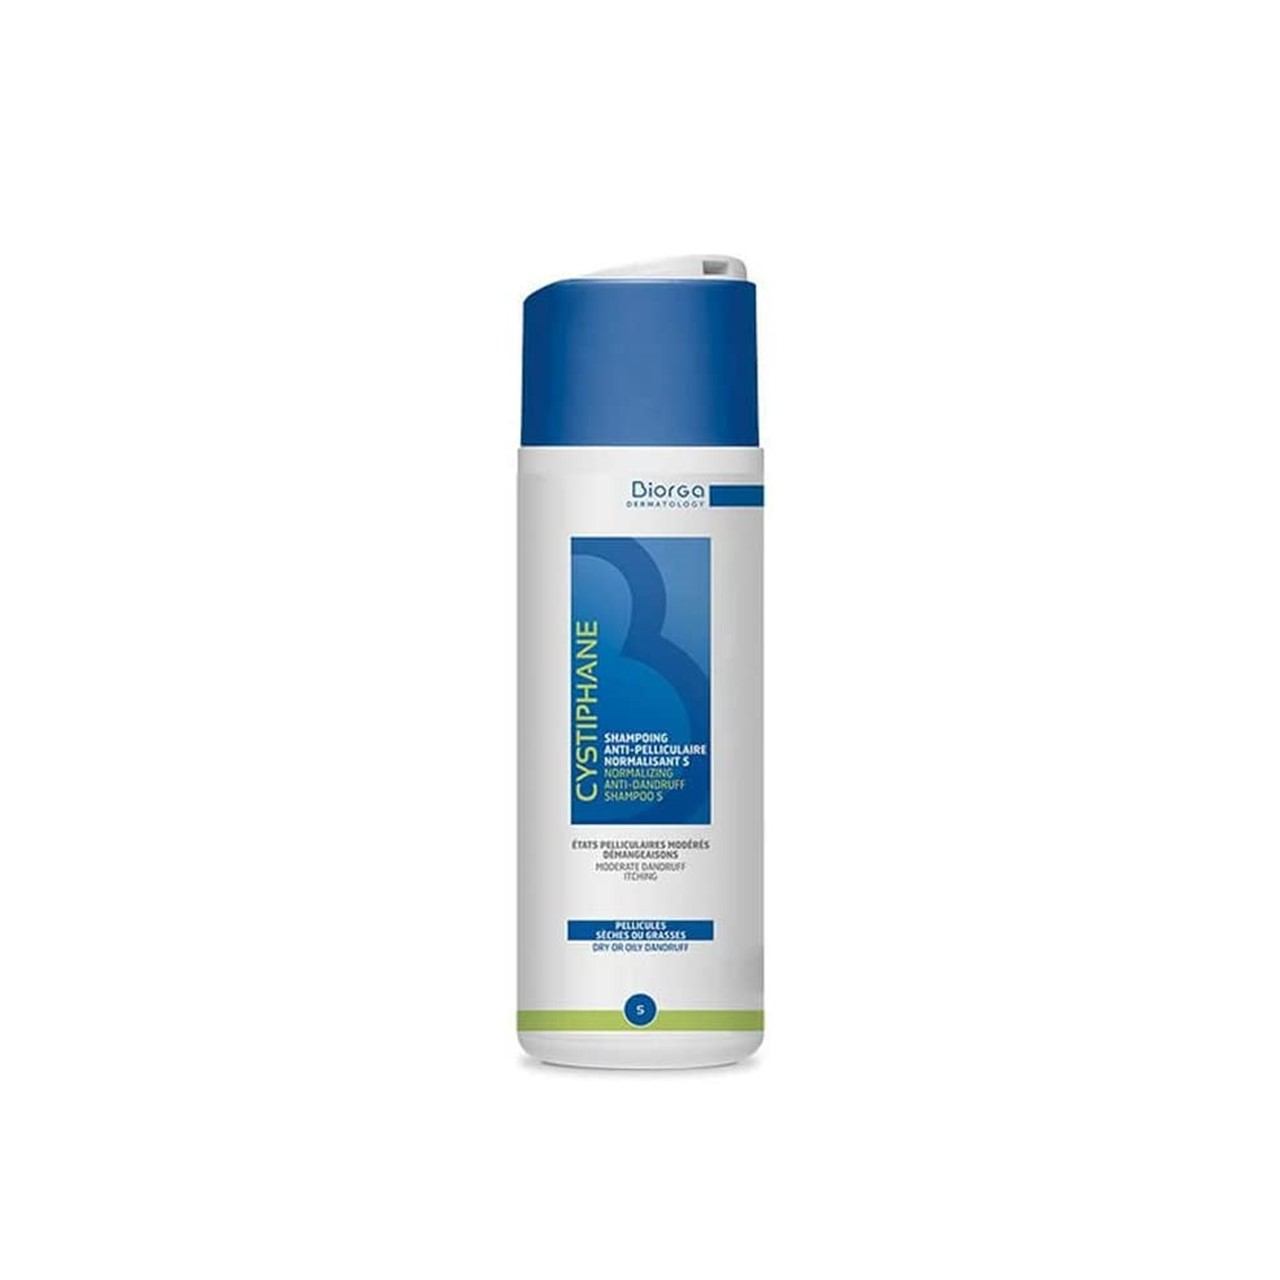 Cystiphane Biorga Anti-Dandruff Normalising S Shampoo 200ml (6.76fl oz)